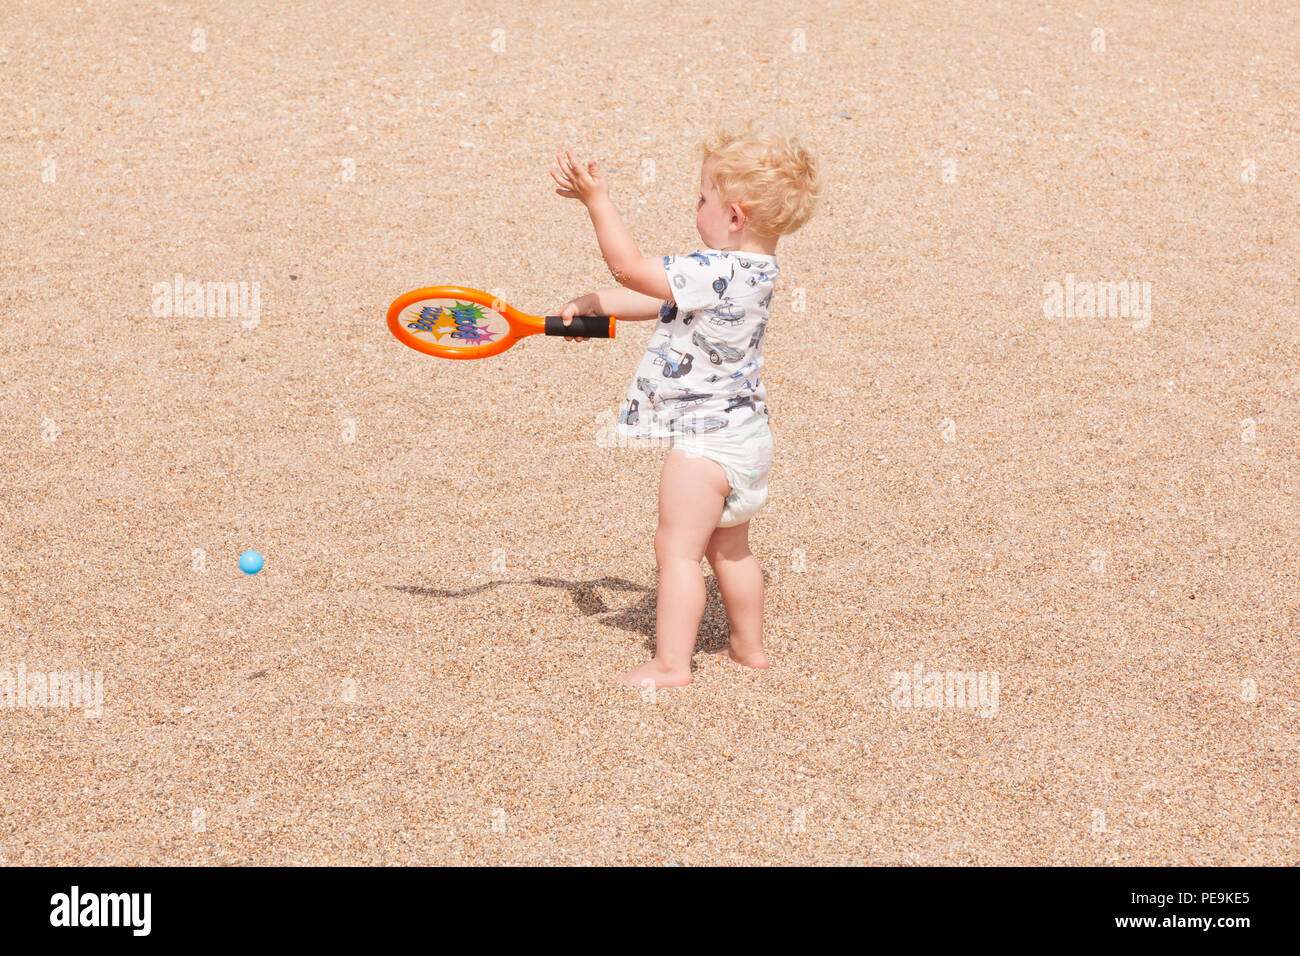 Garçon de deux ans jouant avec une batte et un ballon, Devon, Angleterre, Royaume-Uni. Banque D'Images